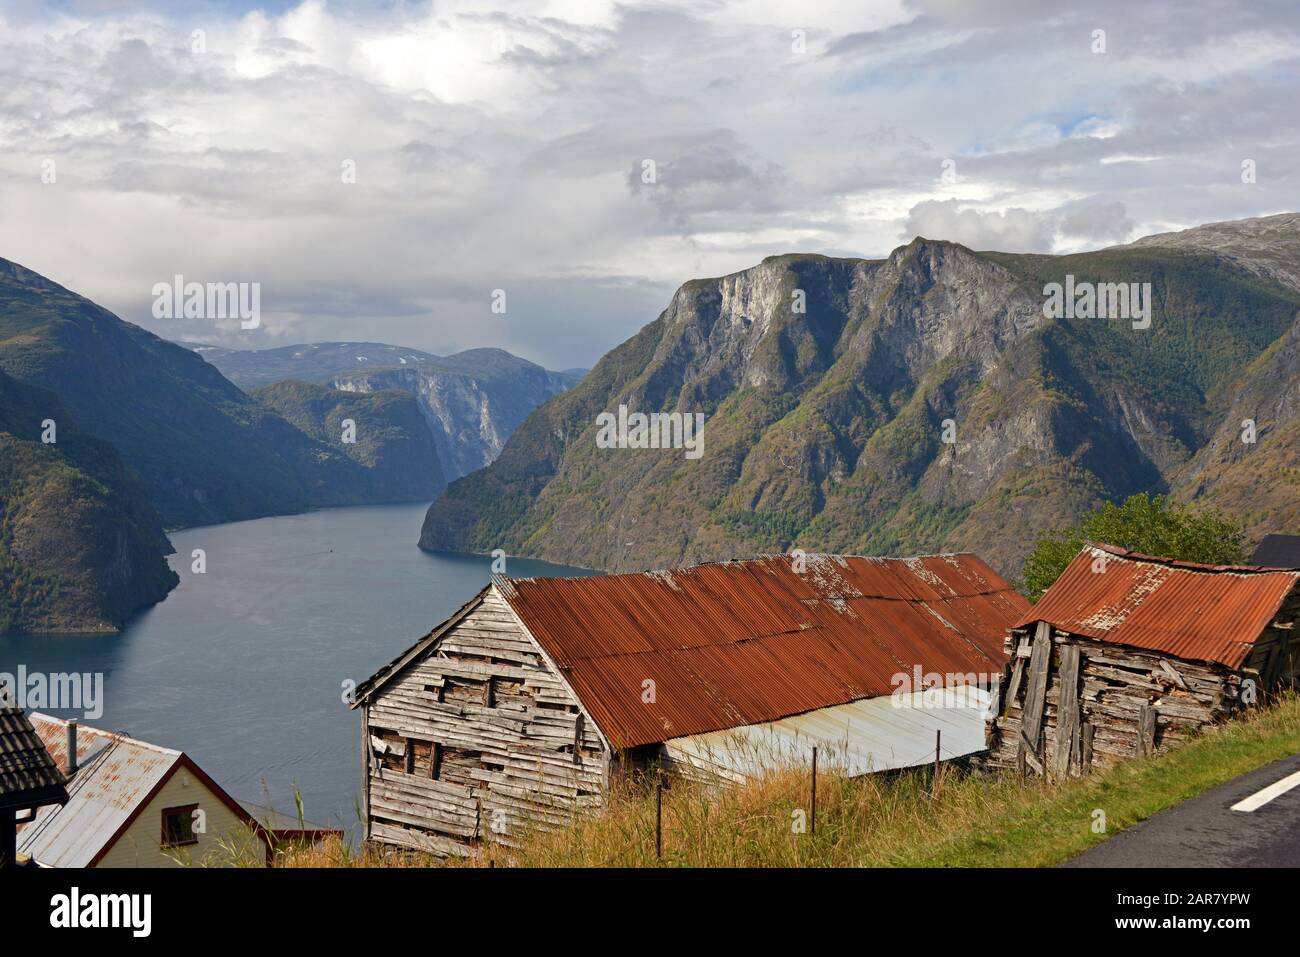 HOUSES OVERLOOKING THE AURLANDSFJORDEN, NORWAY Stock Photo